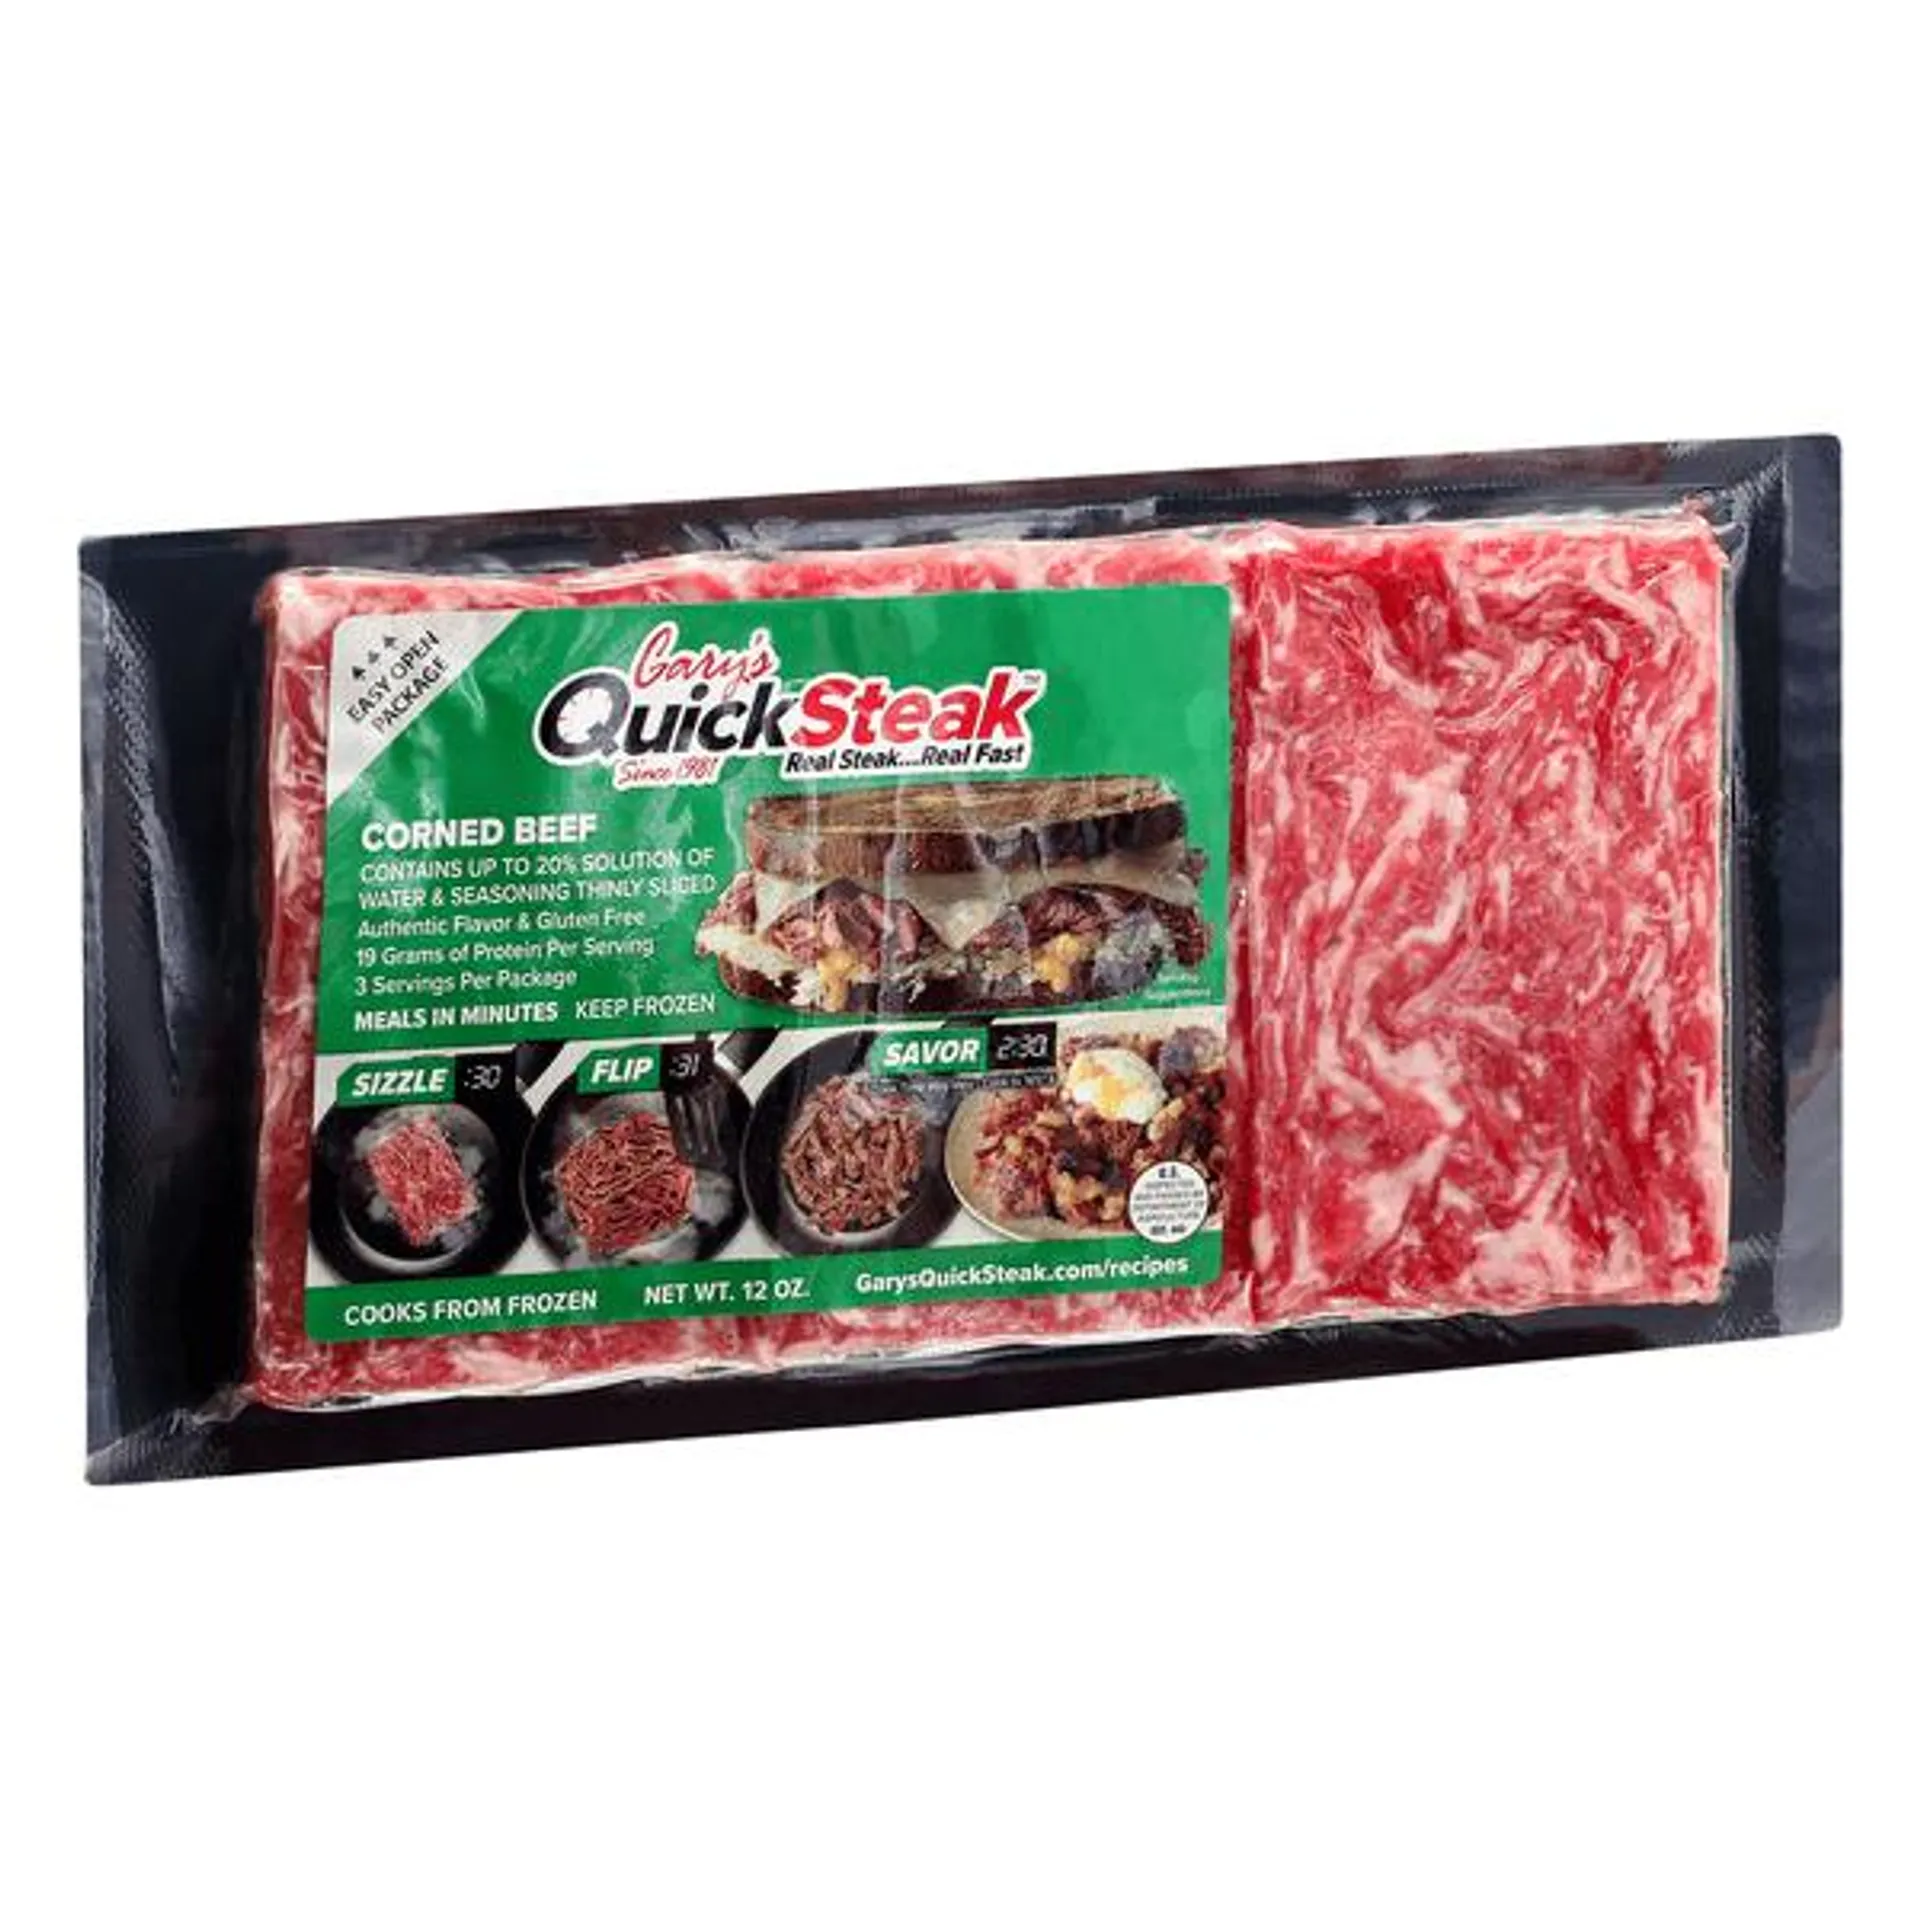 Garys Quick Steak Corned Beef